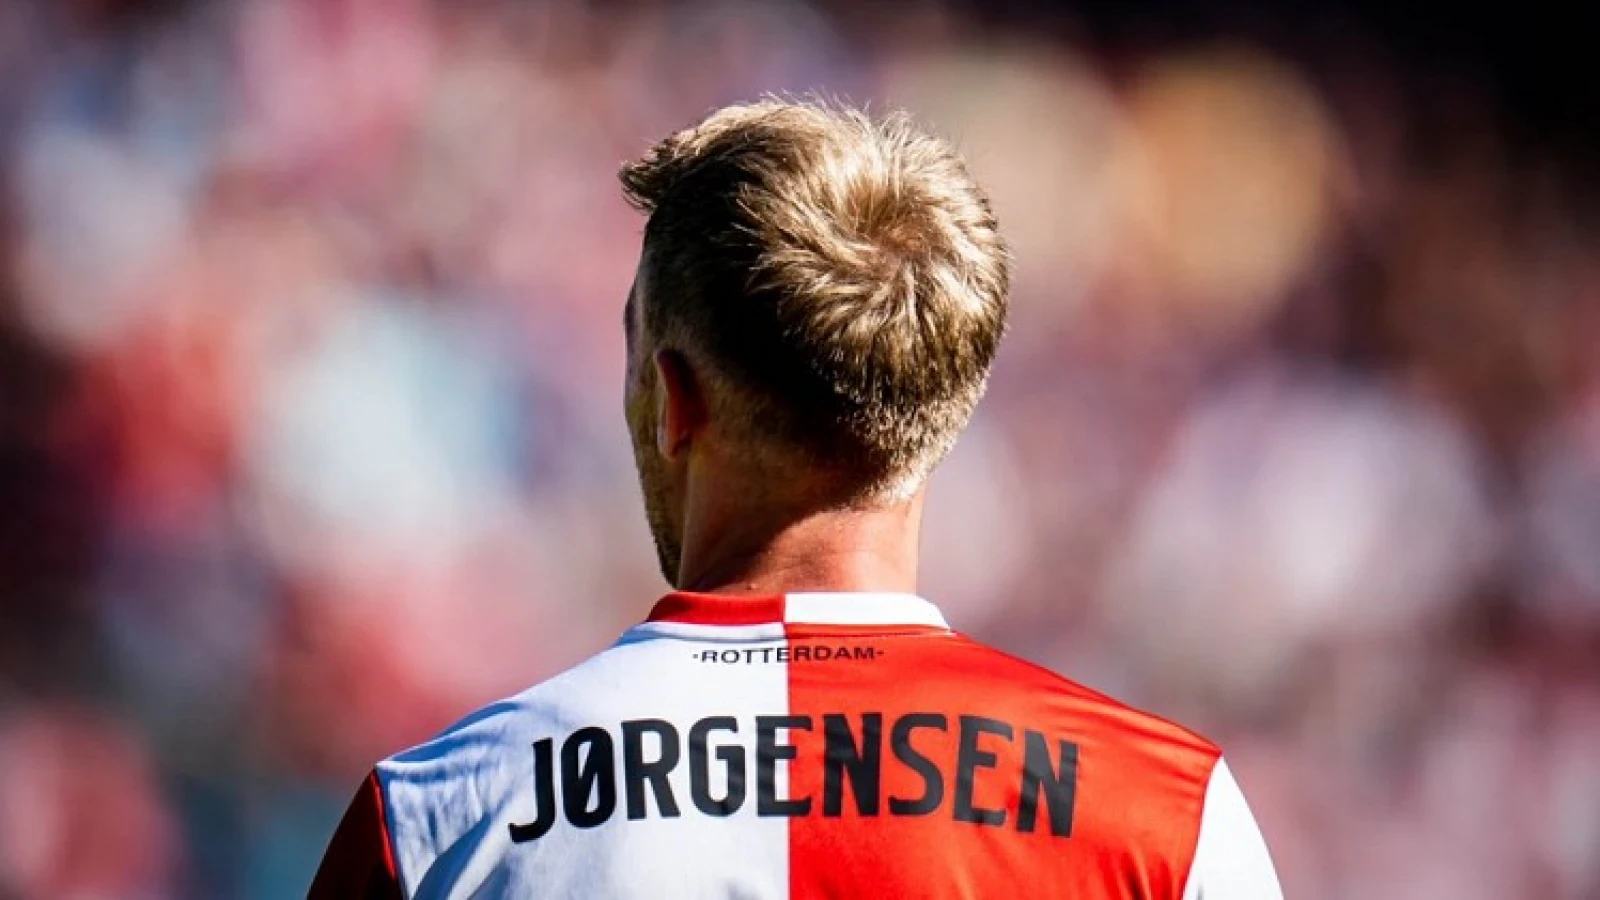 Kritiek richting de aanvaller van Feyenoord: 'Je team heeft je nodig'